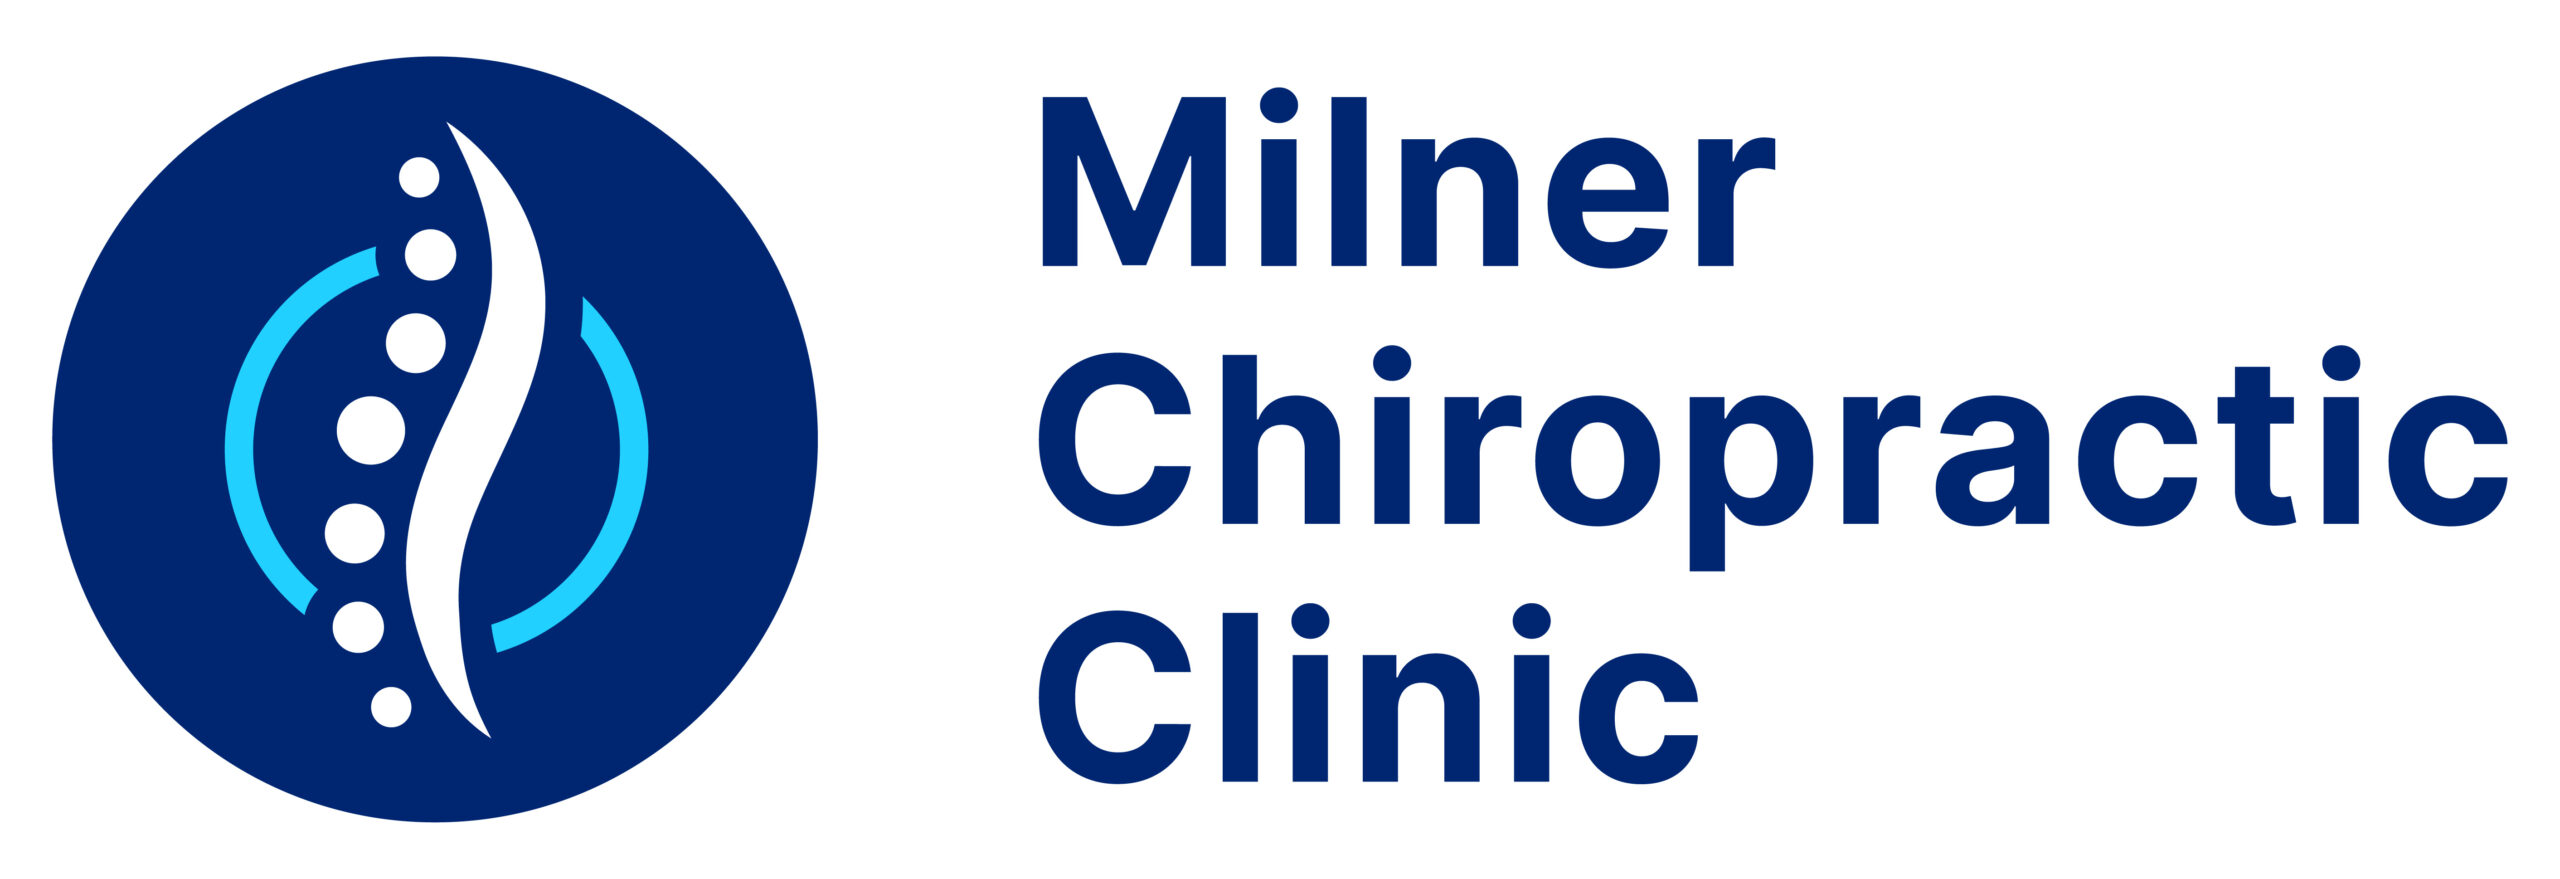 1-milner-chiropractic-logo_horizontal_circle_blue